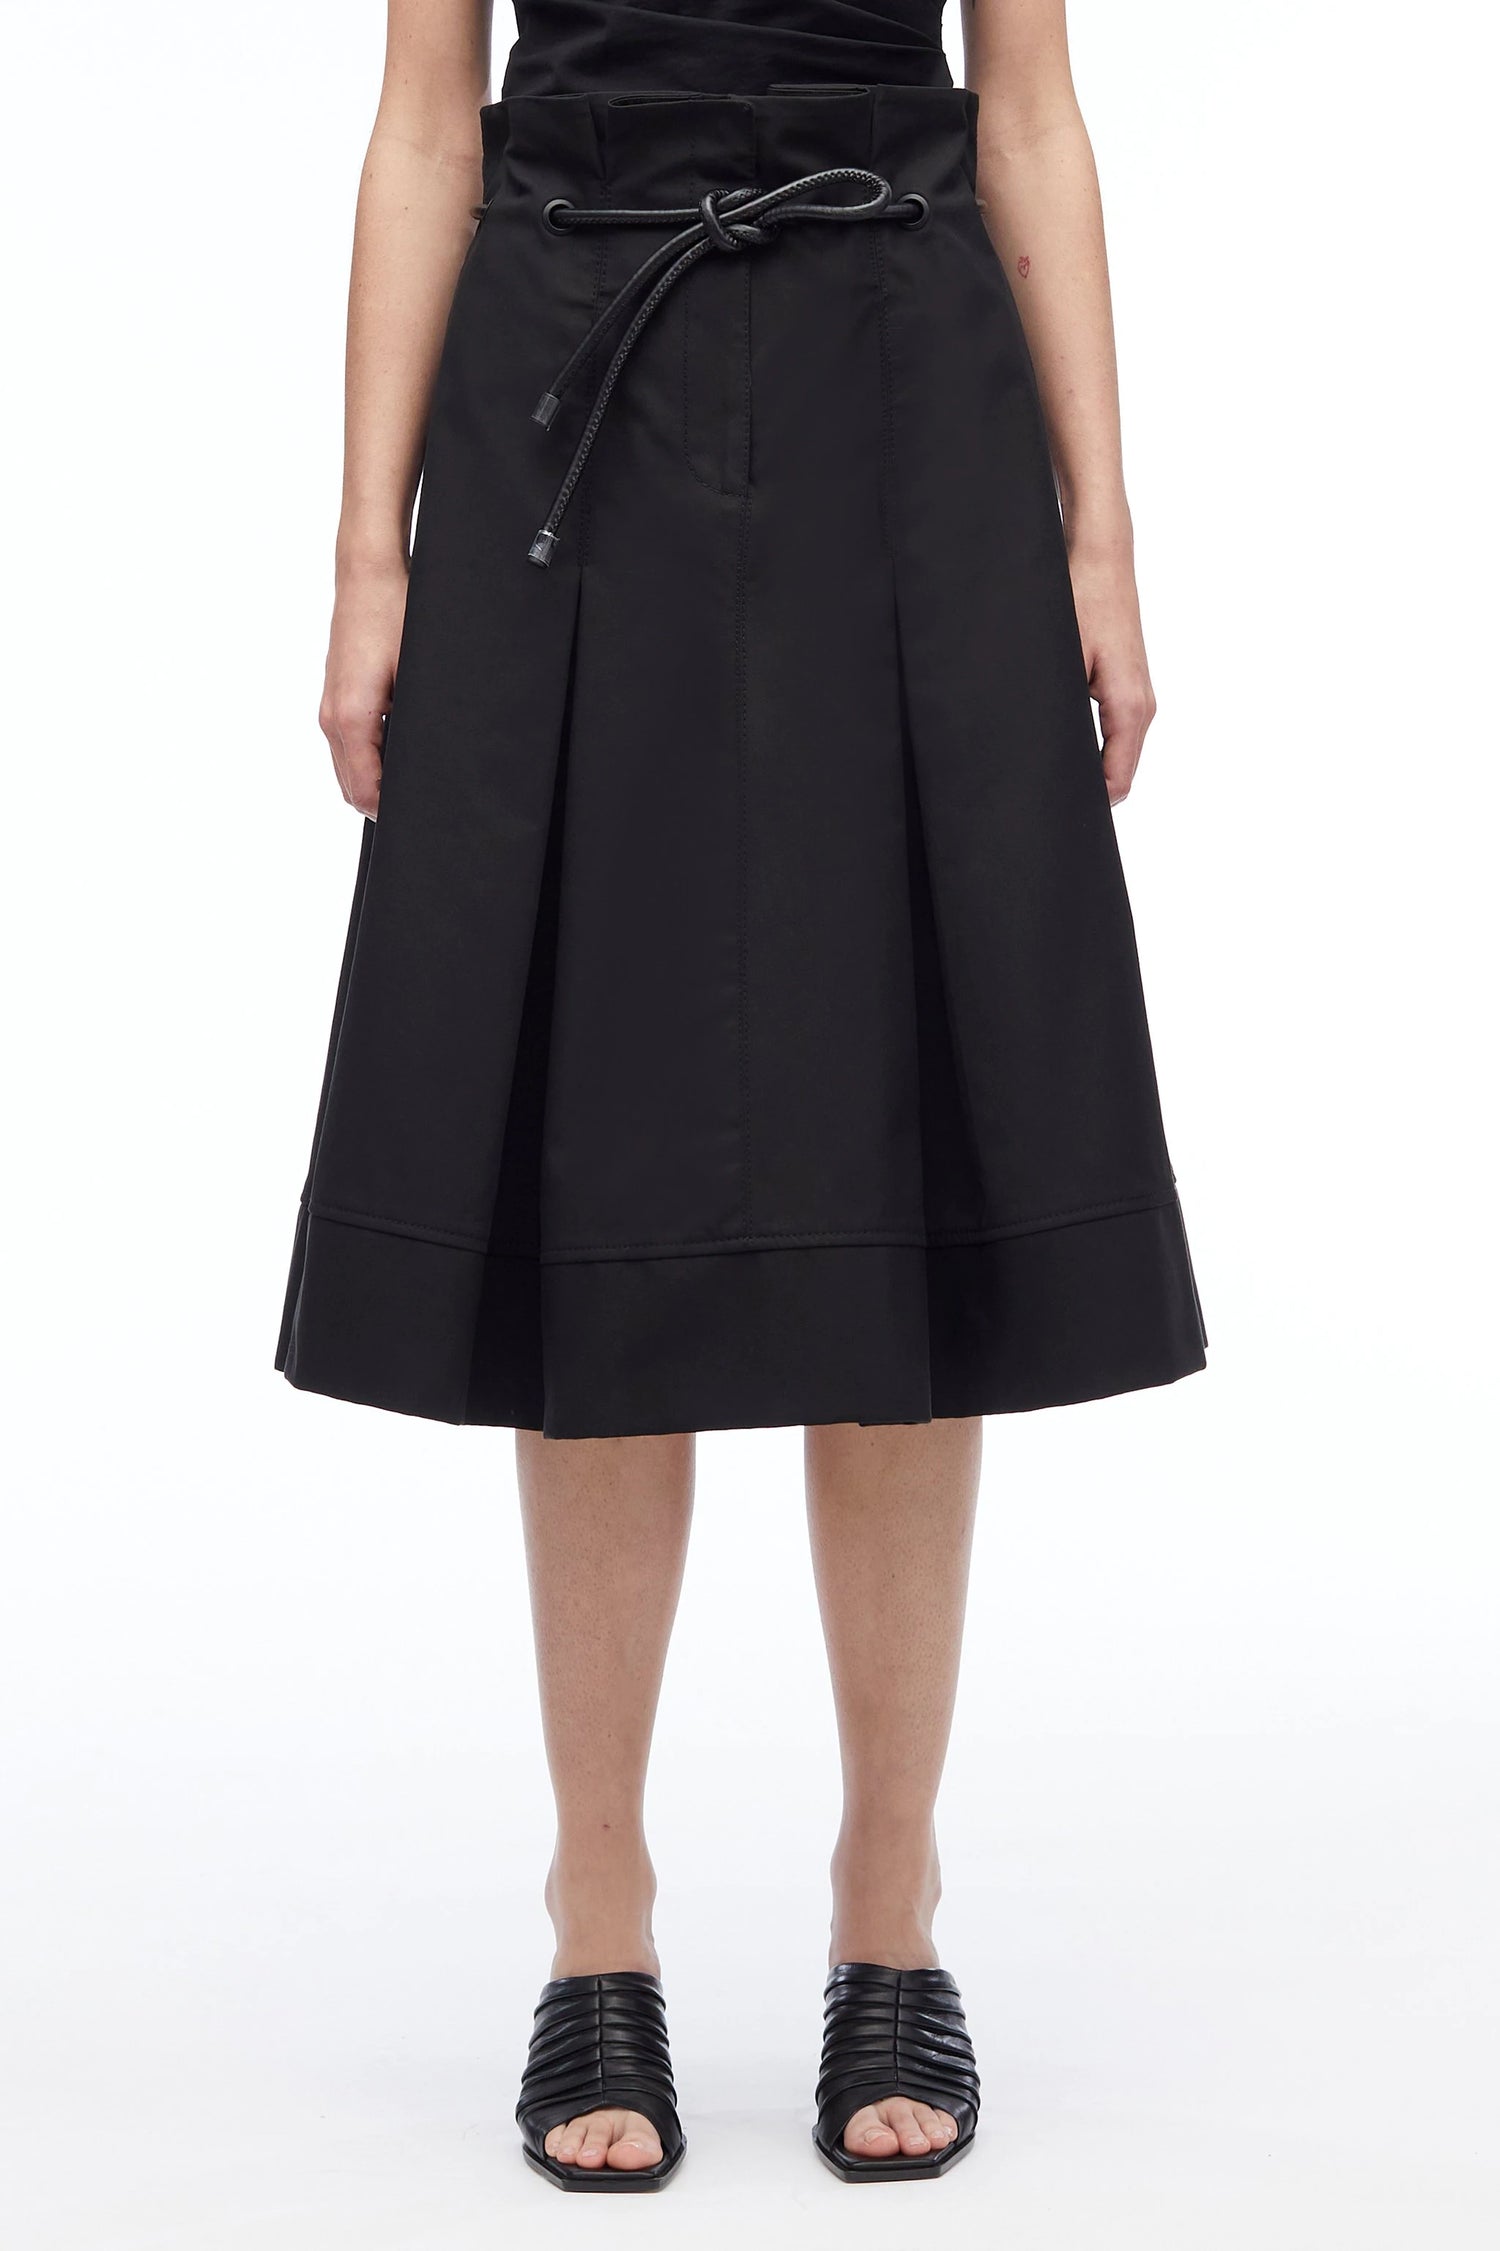 Origami skirt, black